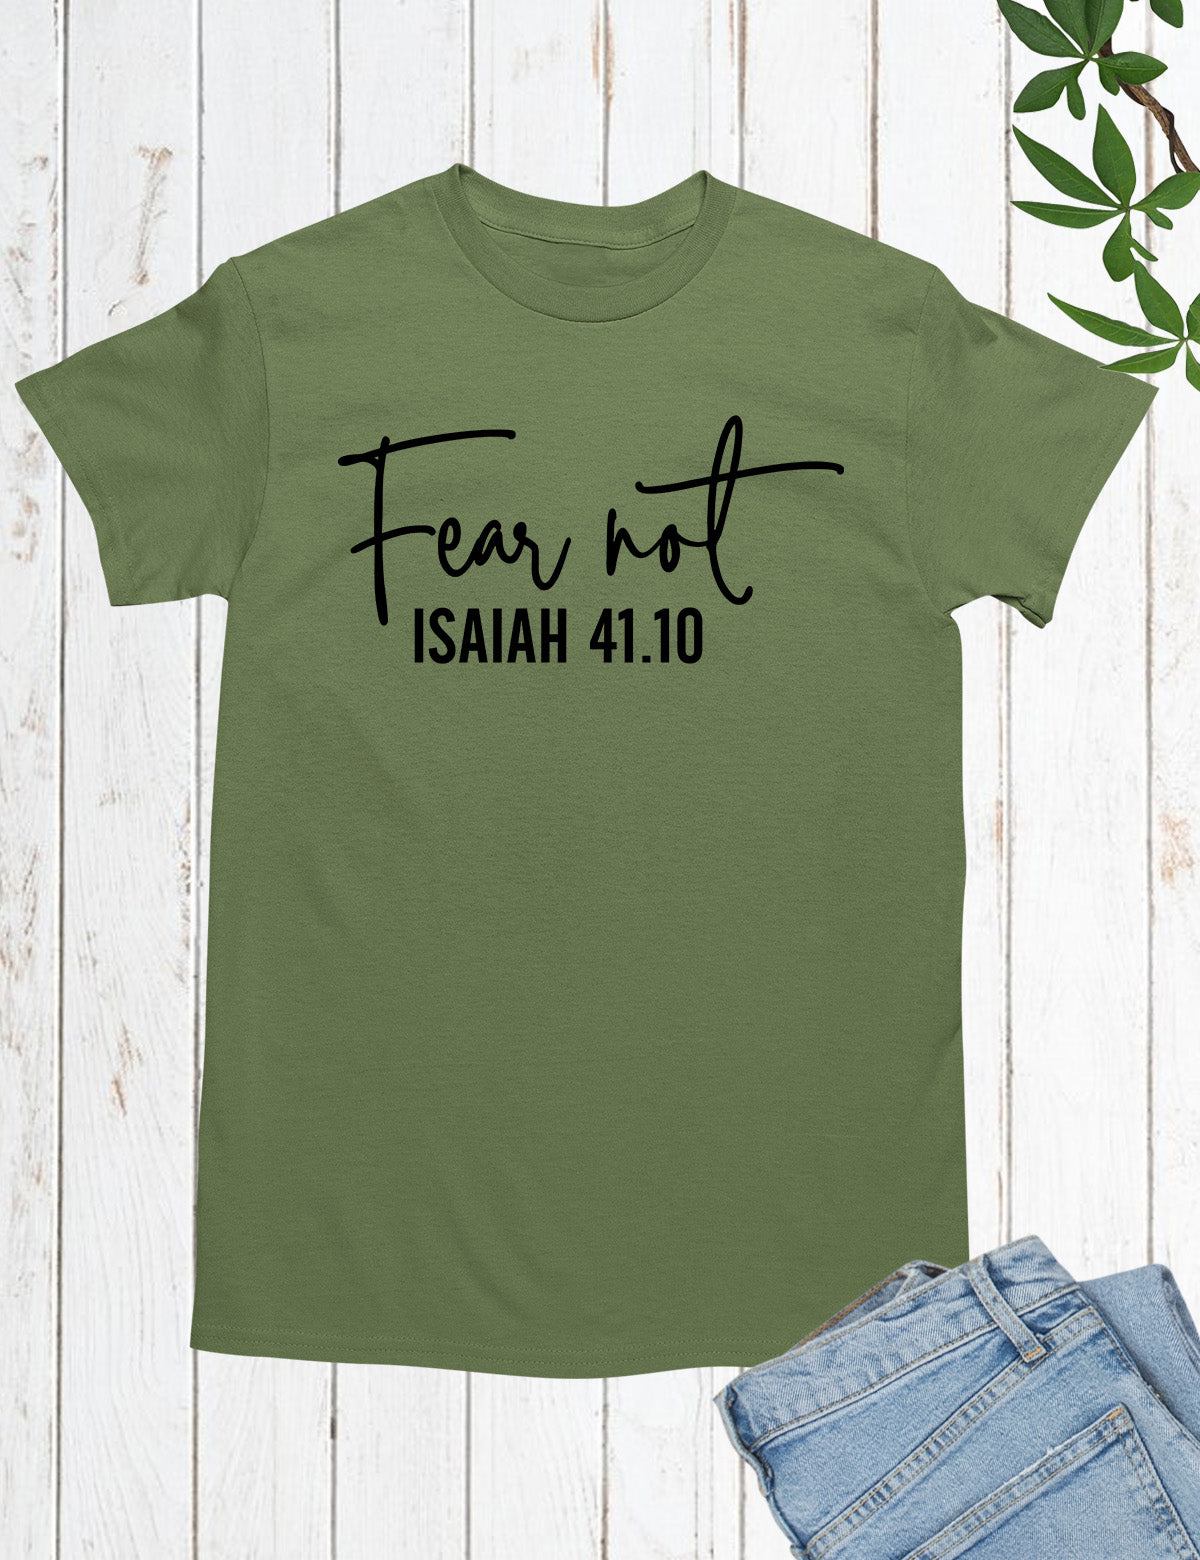 Fear Not Isaiah 41 10 Shirt